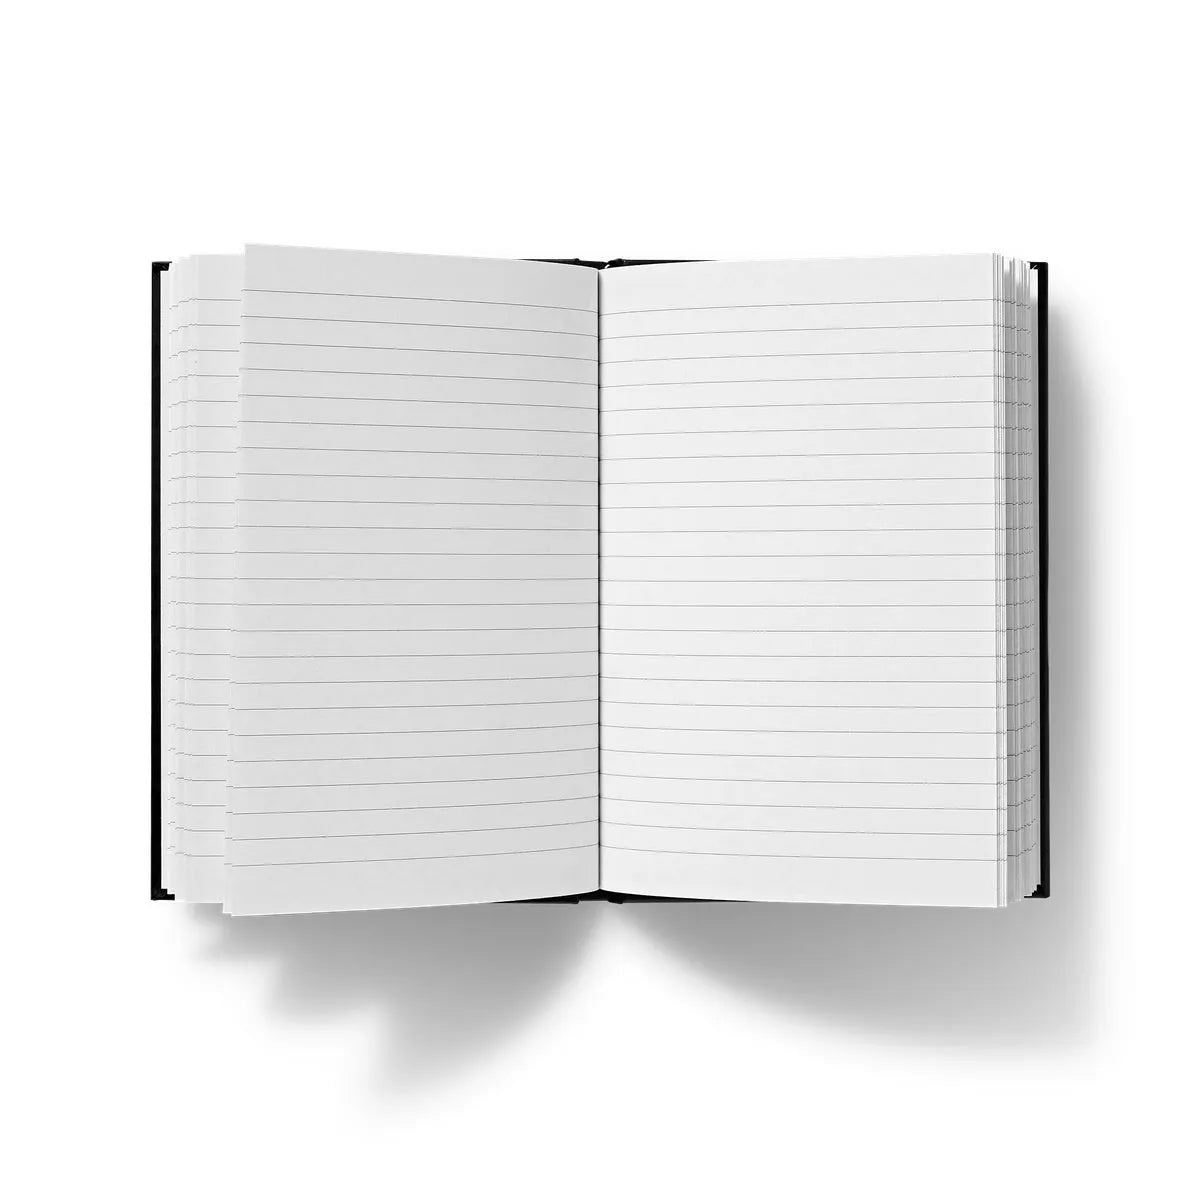 Aigles Et Chêne - Maurice Pillard Verneuil Hardback Journal - Notebooks & Notepads - Aesthetic Art